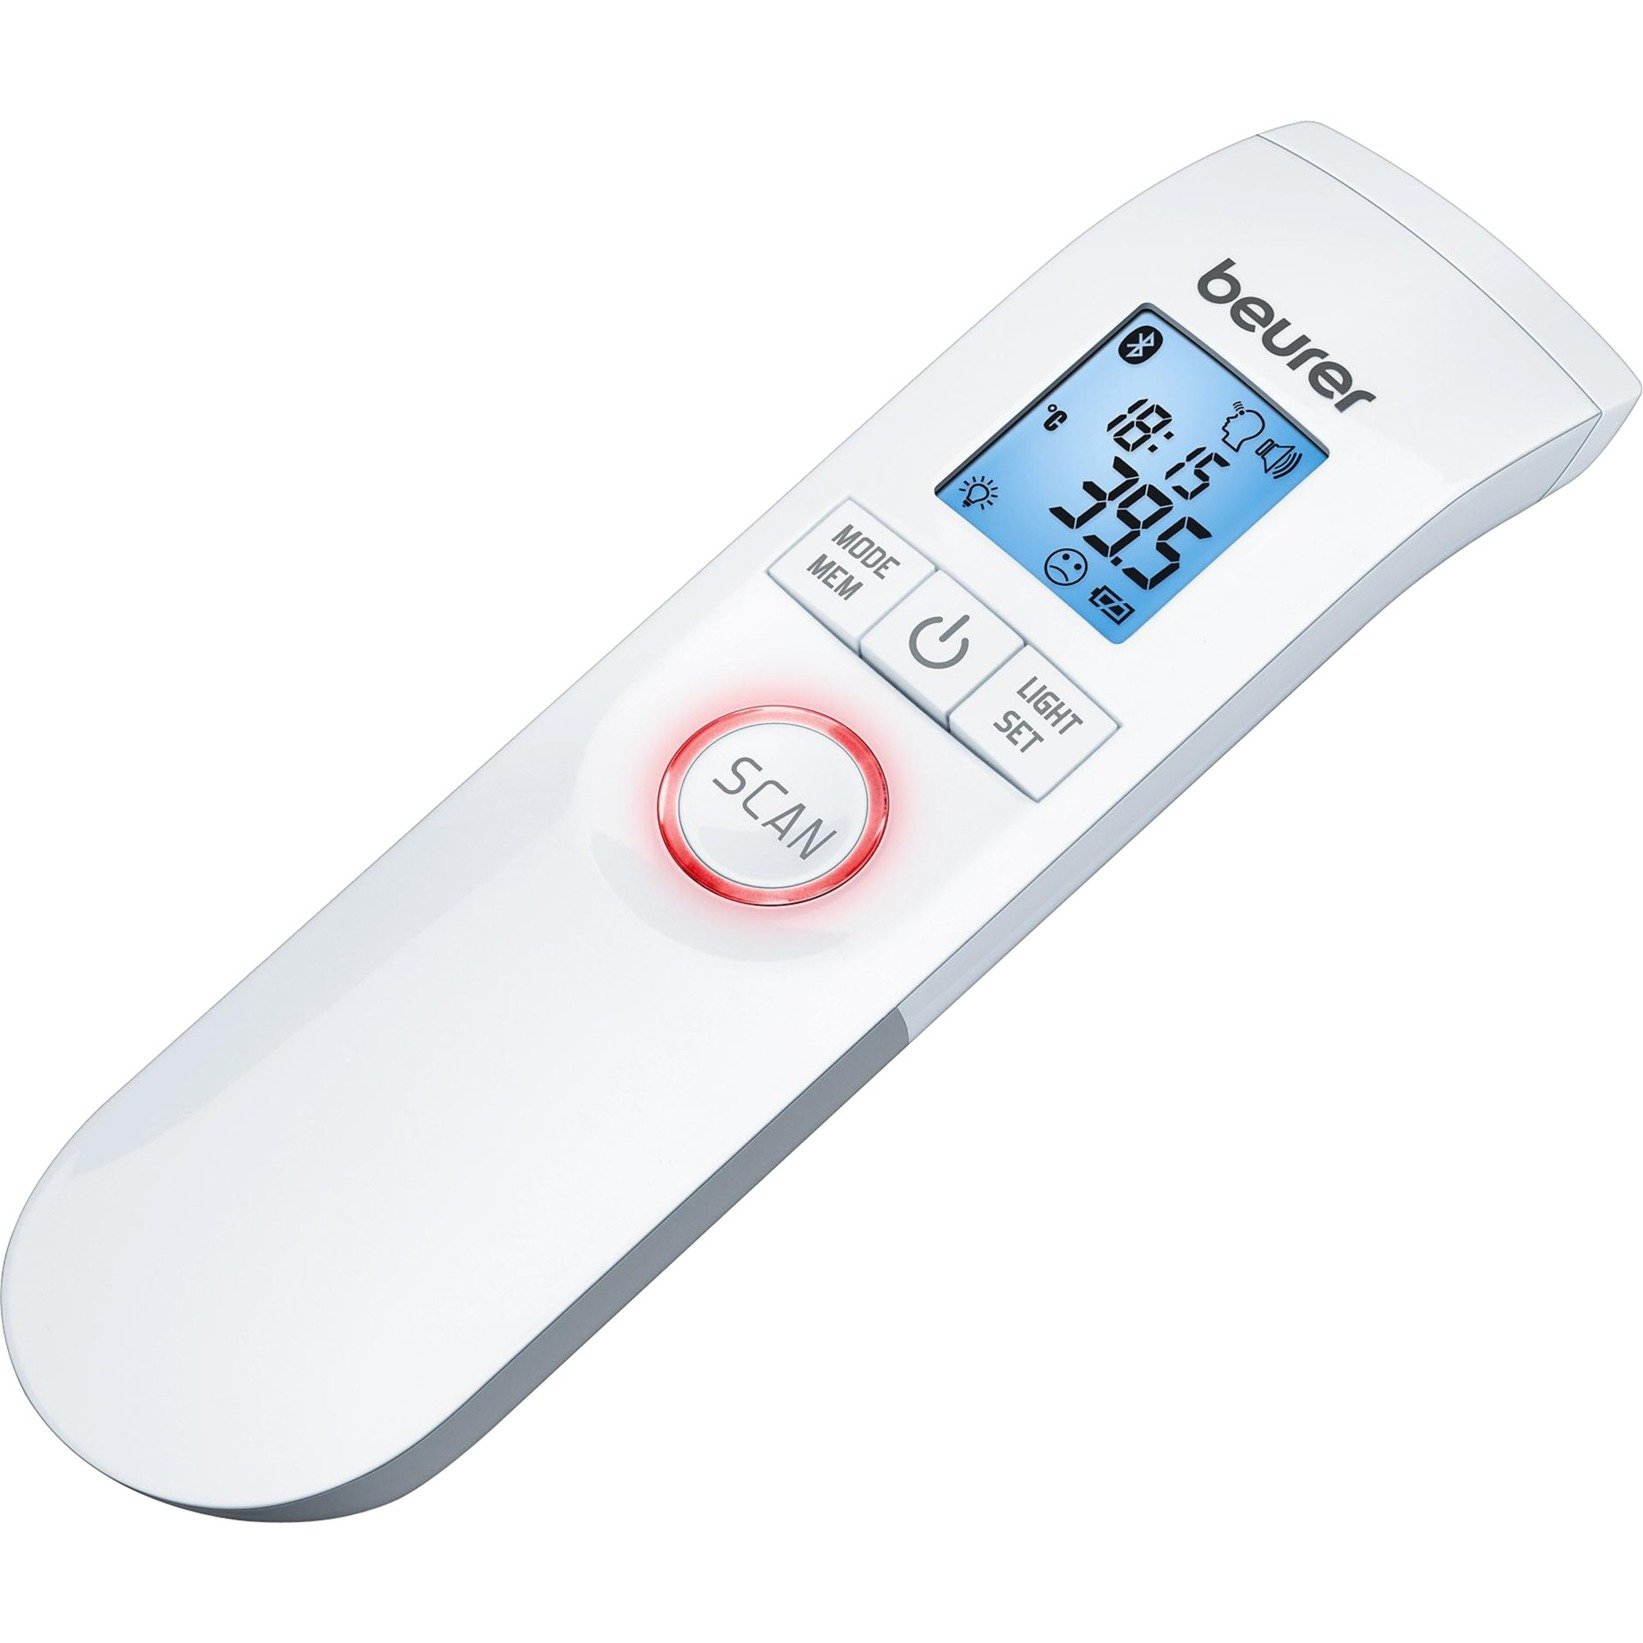 Image of Alternate - FT 95, Fieberthermometer online einkaufen bei Alternate